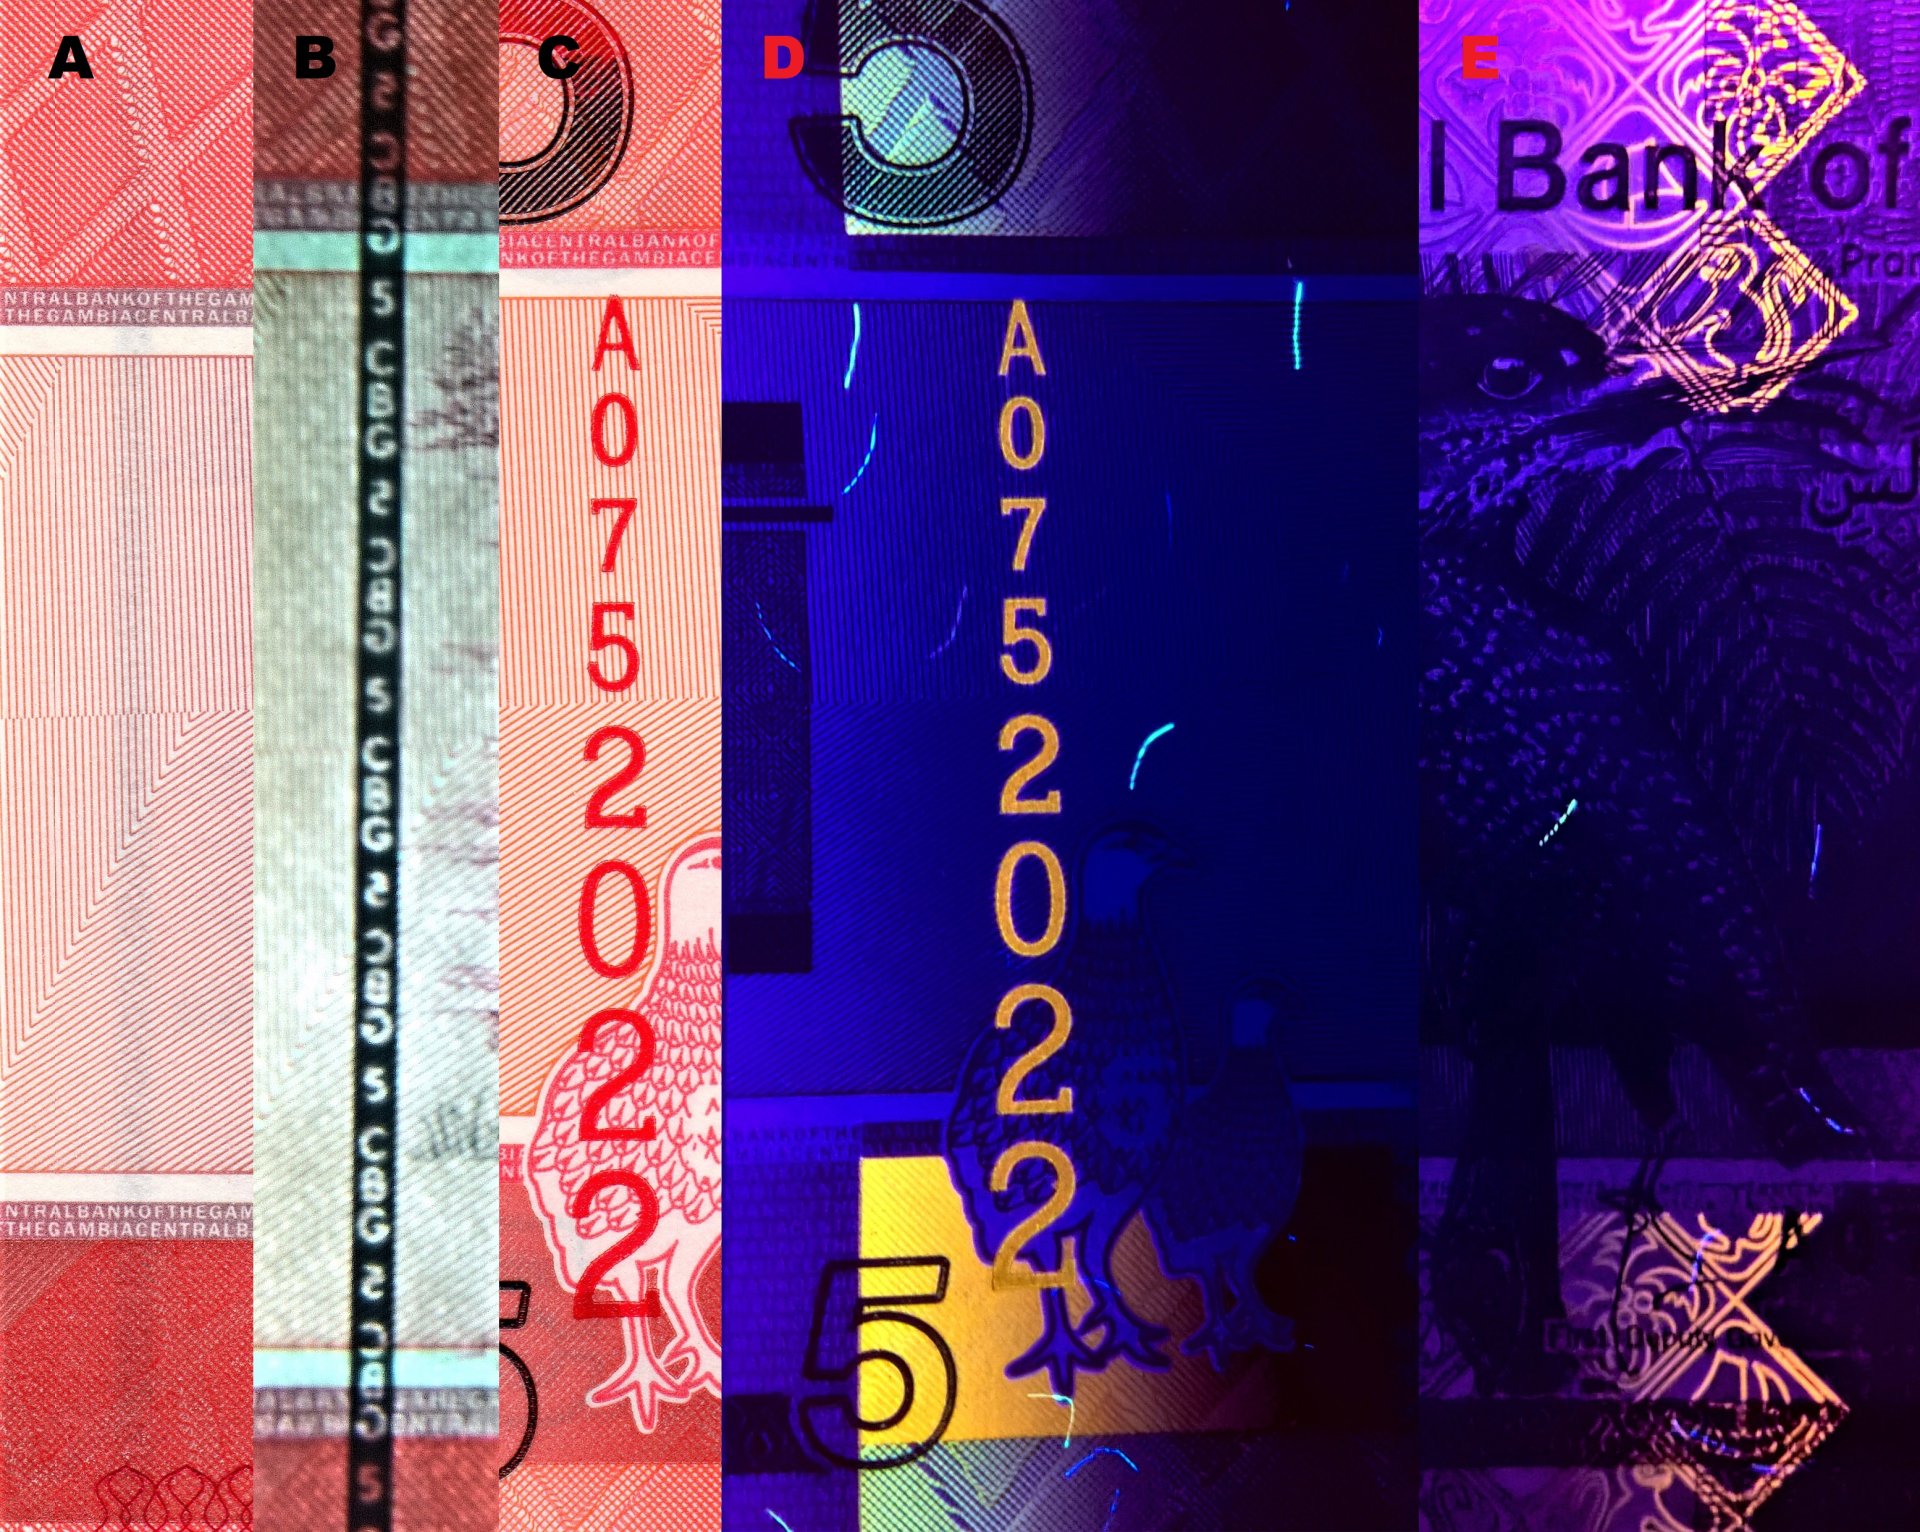 Obr.6 A) Vnořený kompaktní bezpečnostní proužek. B) Stejný proužek v protisvětle s demetalizovaným akronymem „CBG“ a nominálem „5“ v opozičním postavení. C) Červené vertikálně orientované ascendentní sériové číslo D) Pod UV nasvícením mění barvu na oranžo